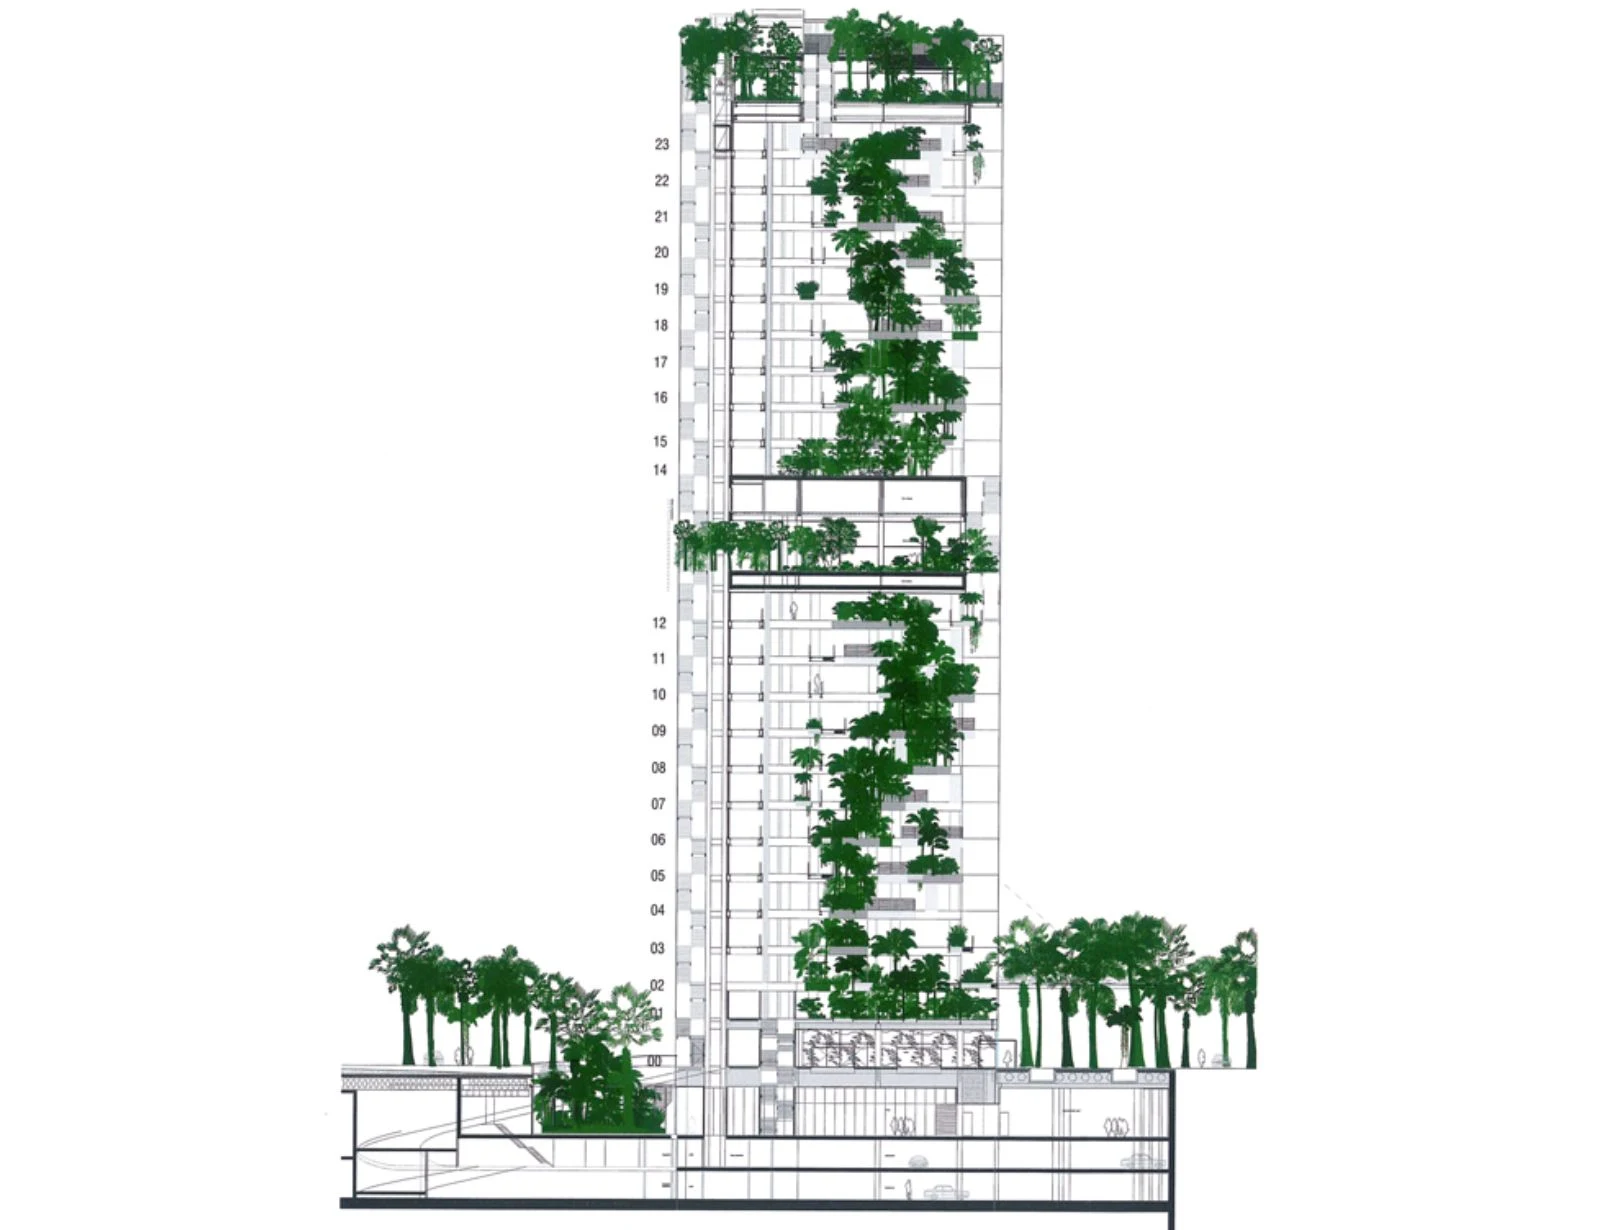 Vertical garden of Renaissance Barcelona Fira Hotel by